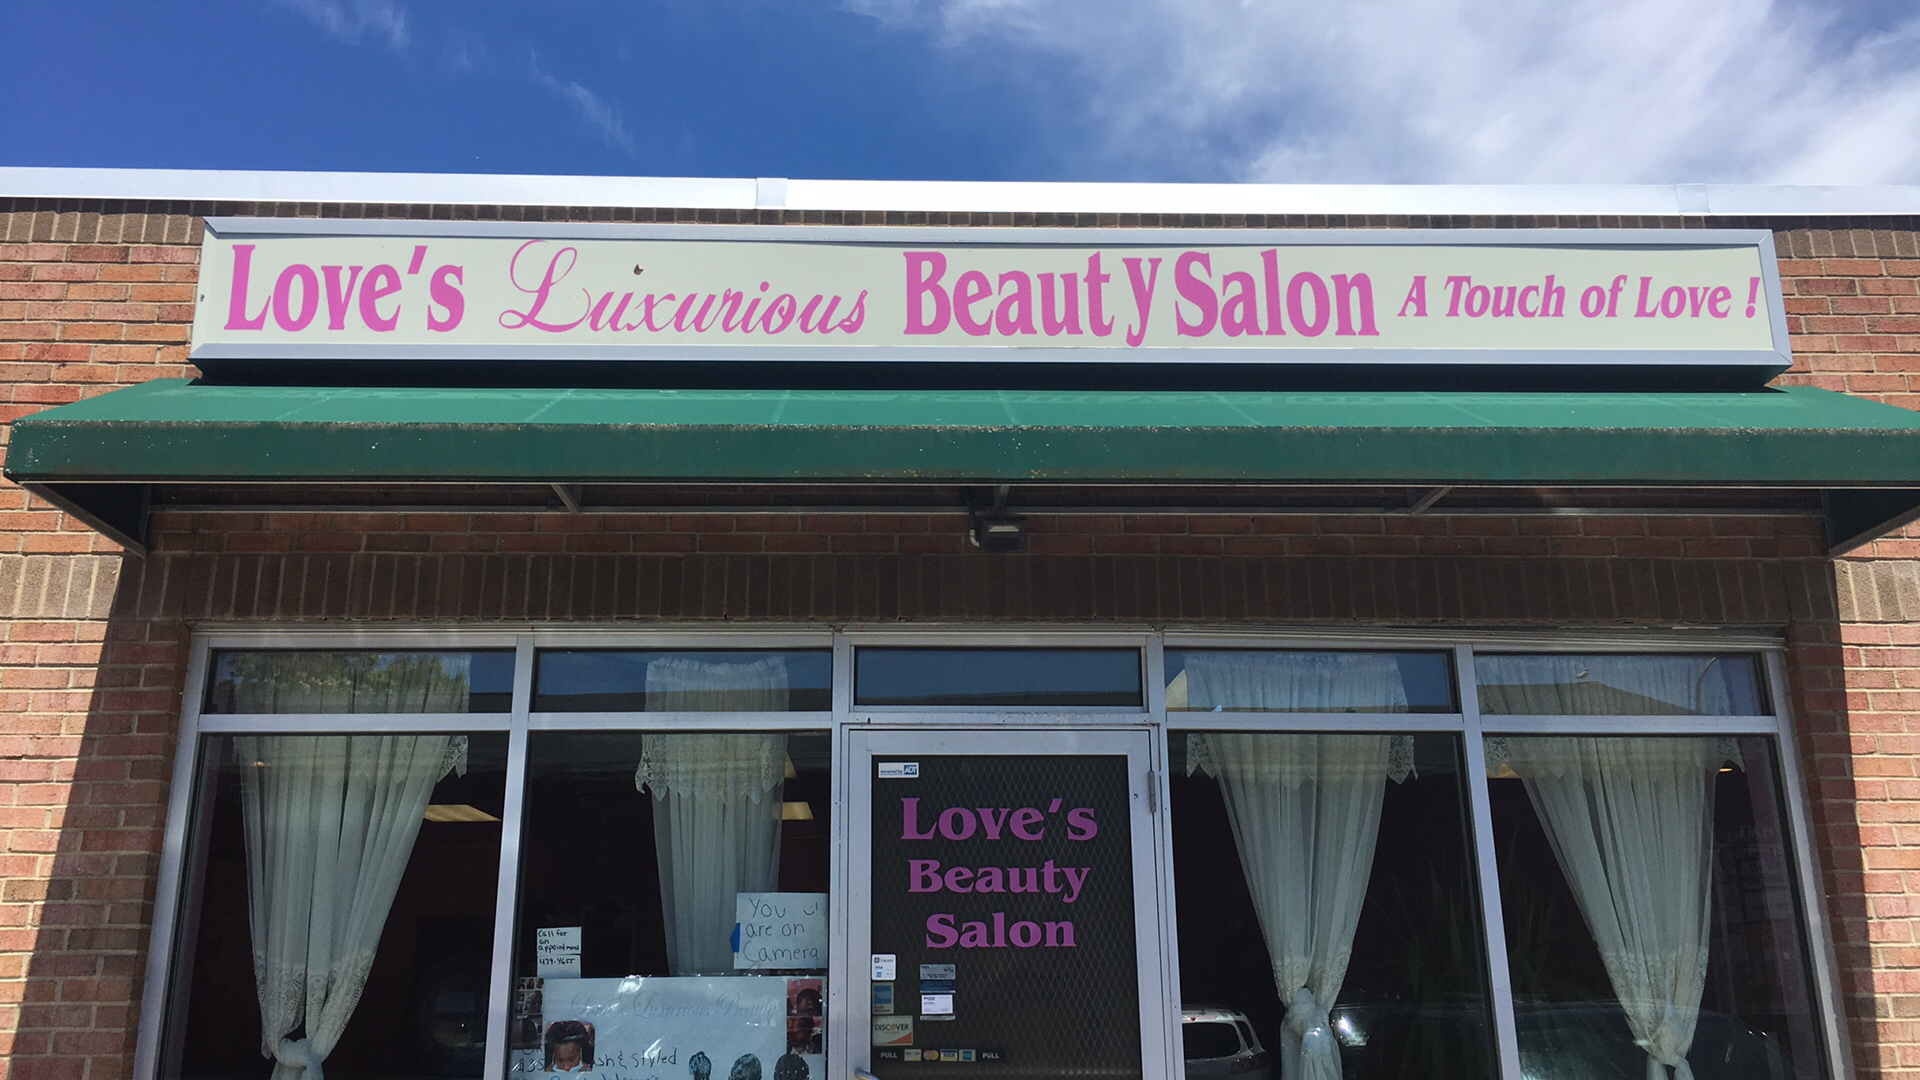 Love's Luxurious Beauty Salon